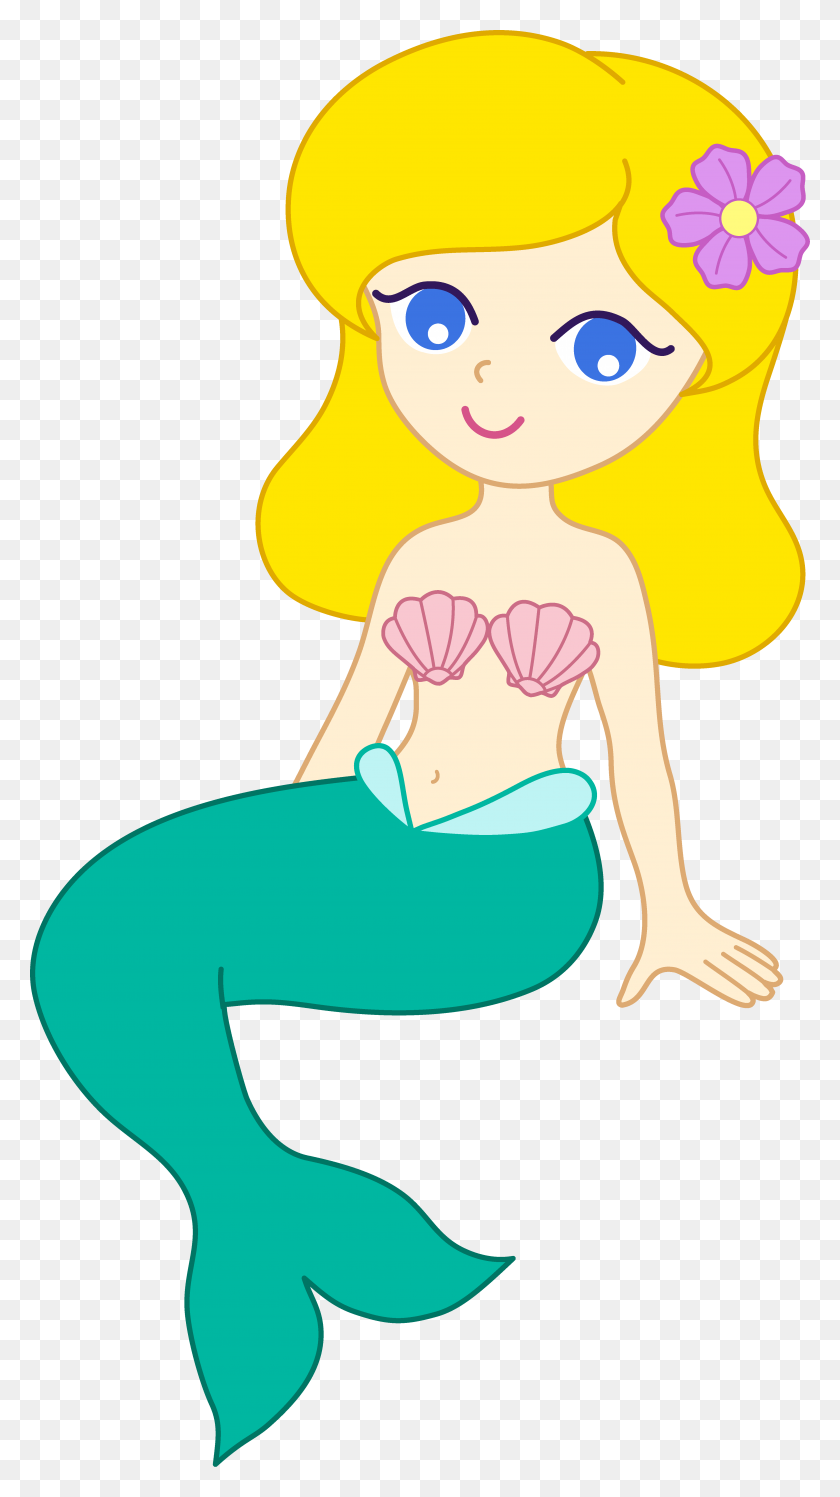 Cute Mermaid With Blonde Hair - Mermaid Clipart